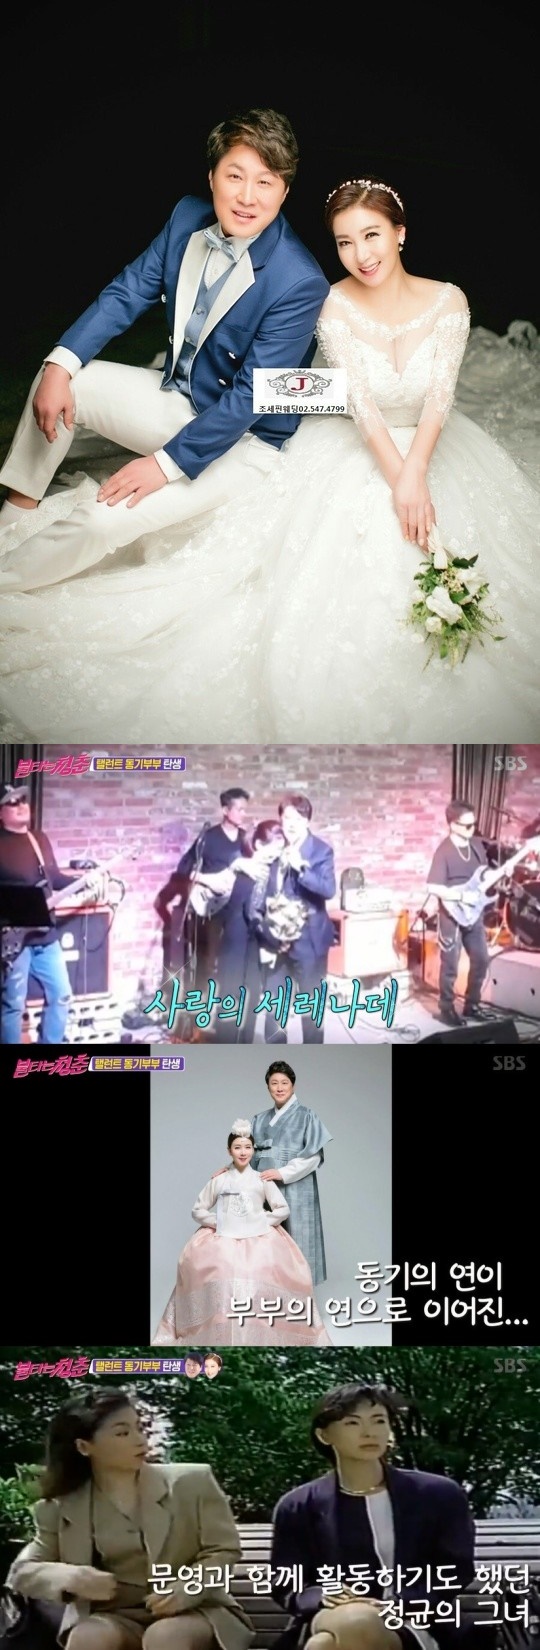 Kim Jung-kyun anuncia matrimonio con el actor Jung Min-kyung a través de la quema de la juventud